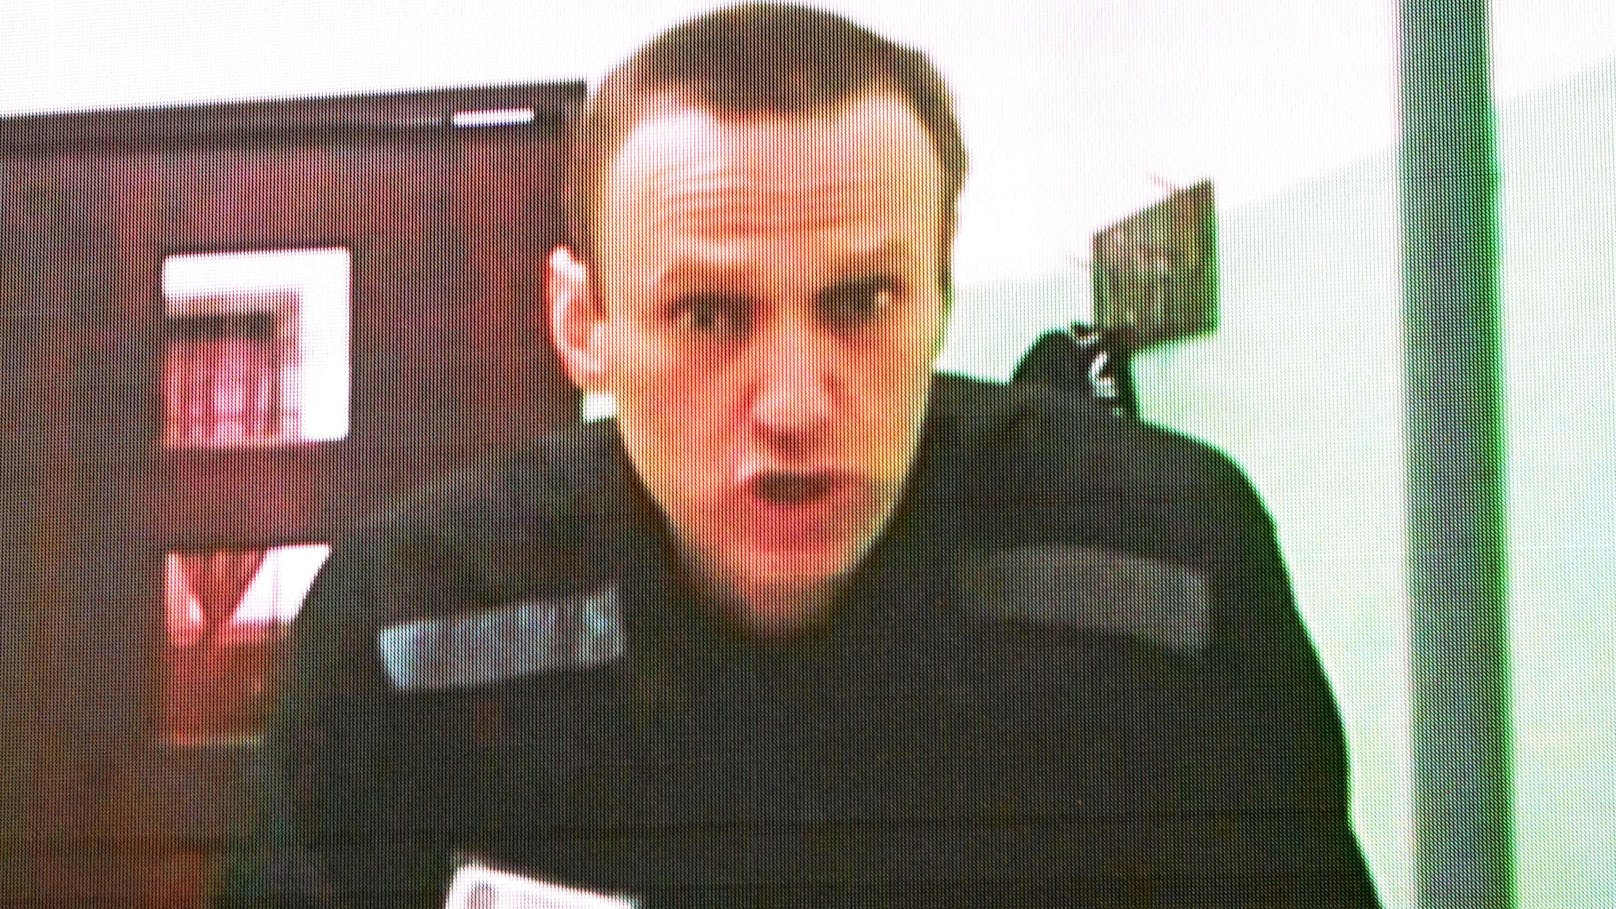 Verhaftet, verurteilt, vergiftet! Das Leben von Nawalny